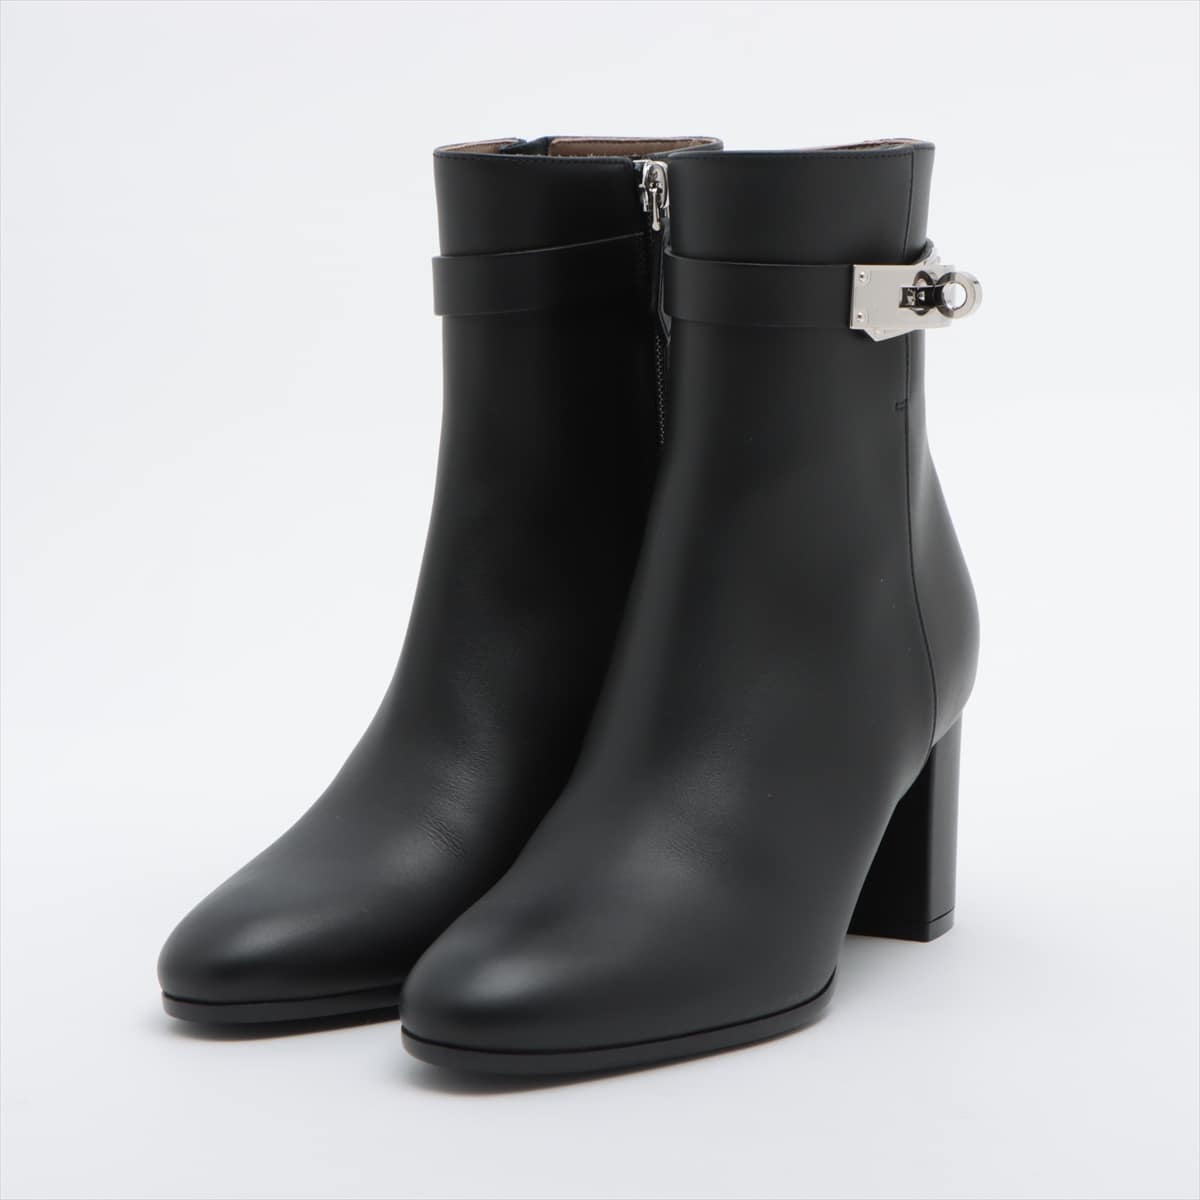 Hermès Leather Boots 35 1/2 Ladies' Black Kelly metal fittings